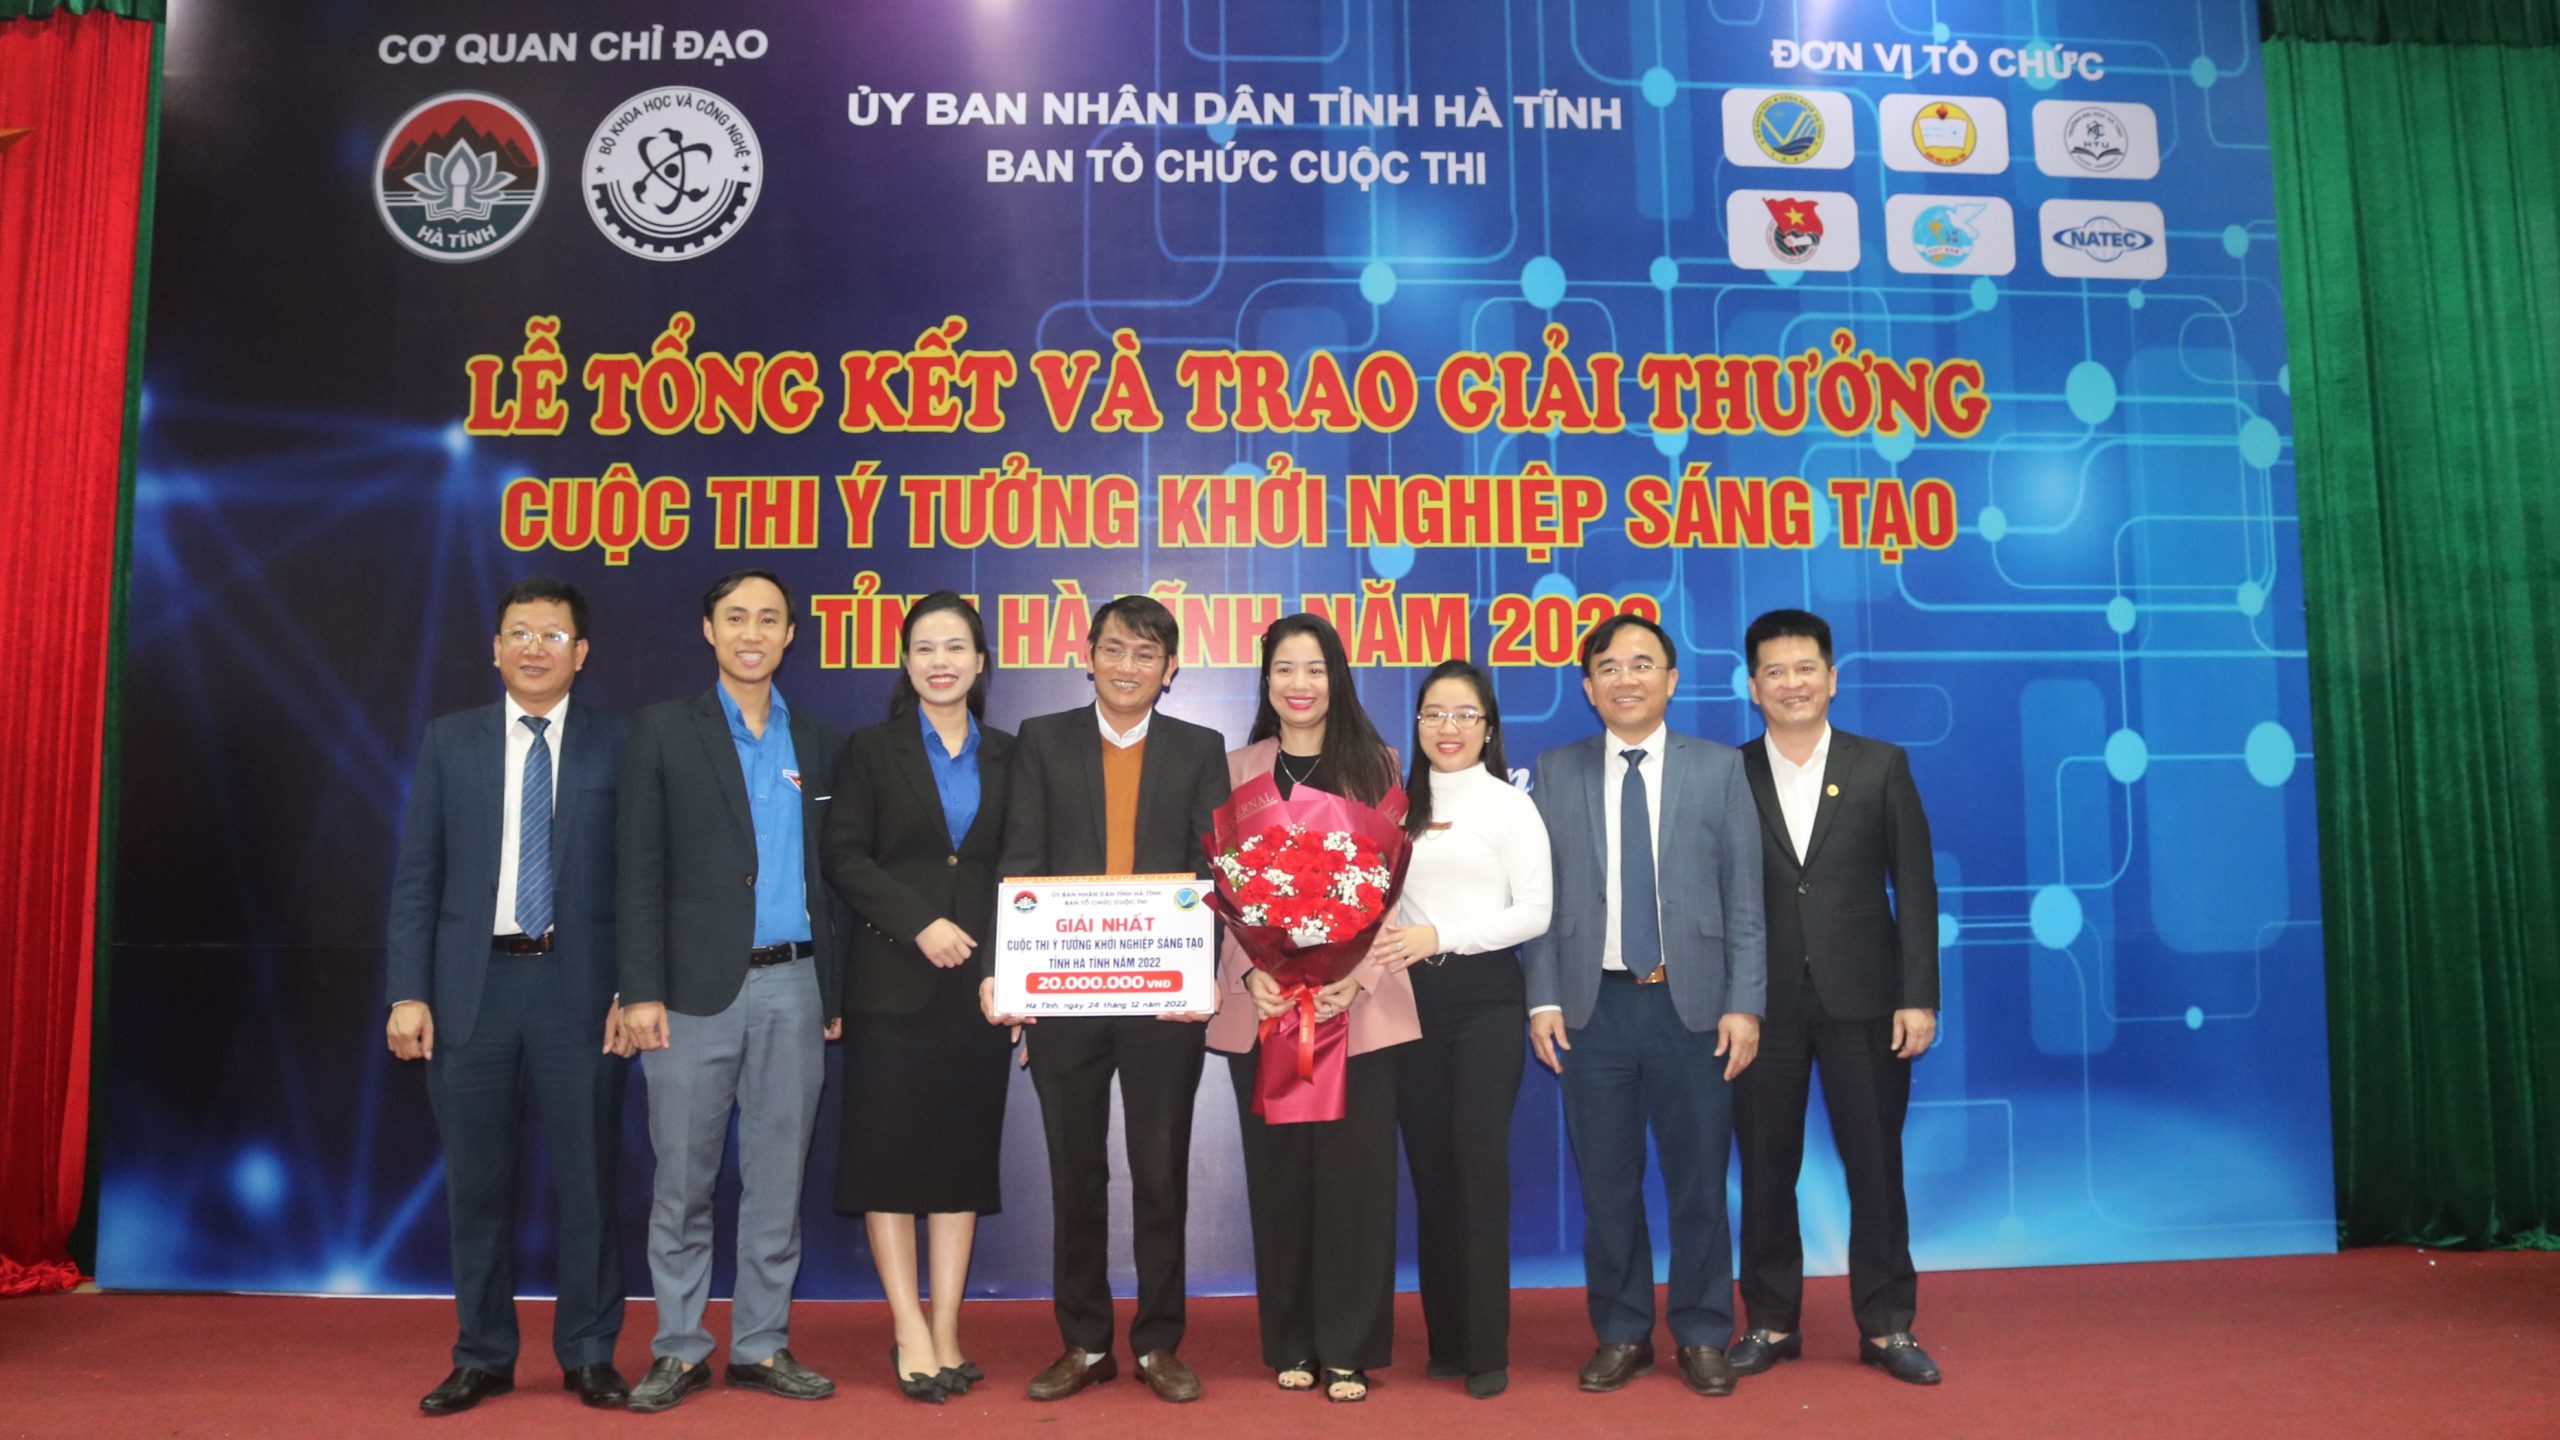 Trao giải nhất Cuộc thi Ý tưởng khởi nghiệp sáng tạo tỉnh Hà Tĩnh cho đại diện Việt Nam Marketing